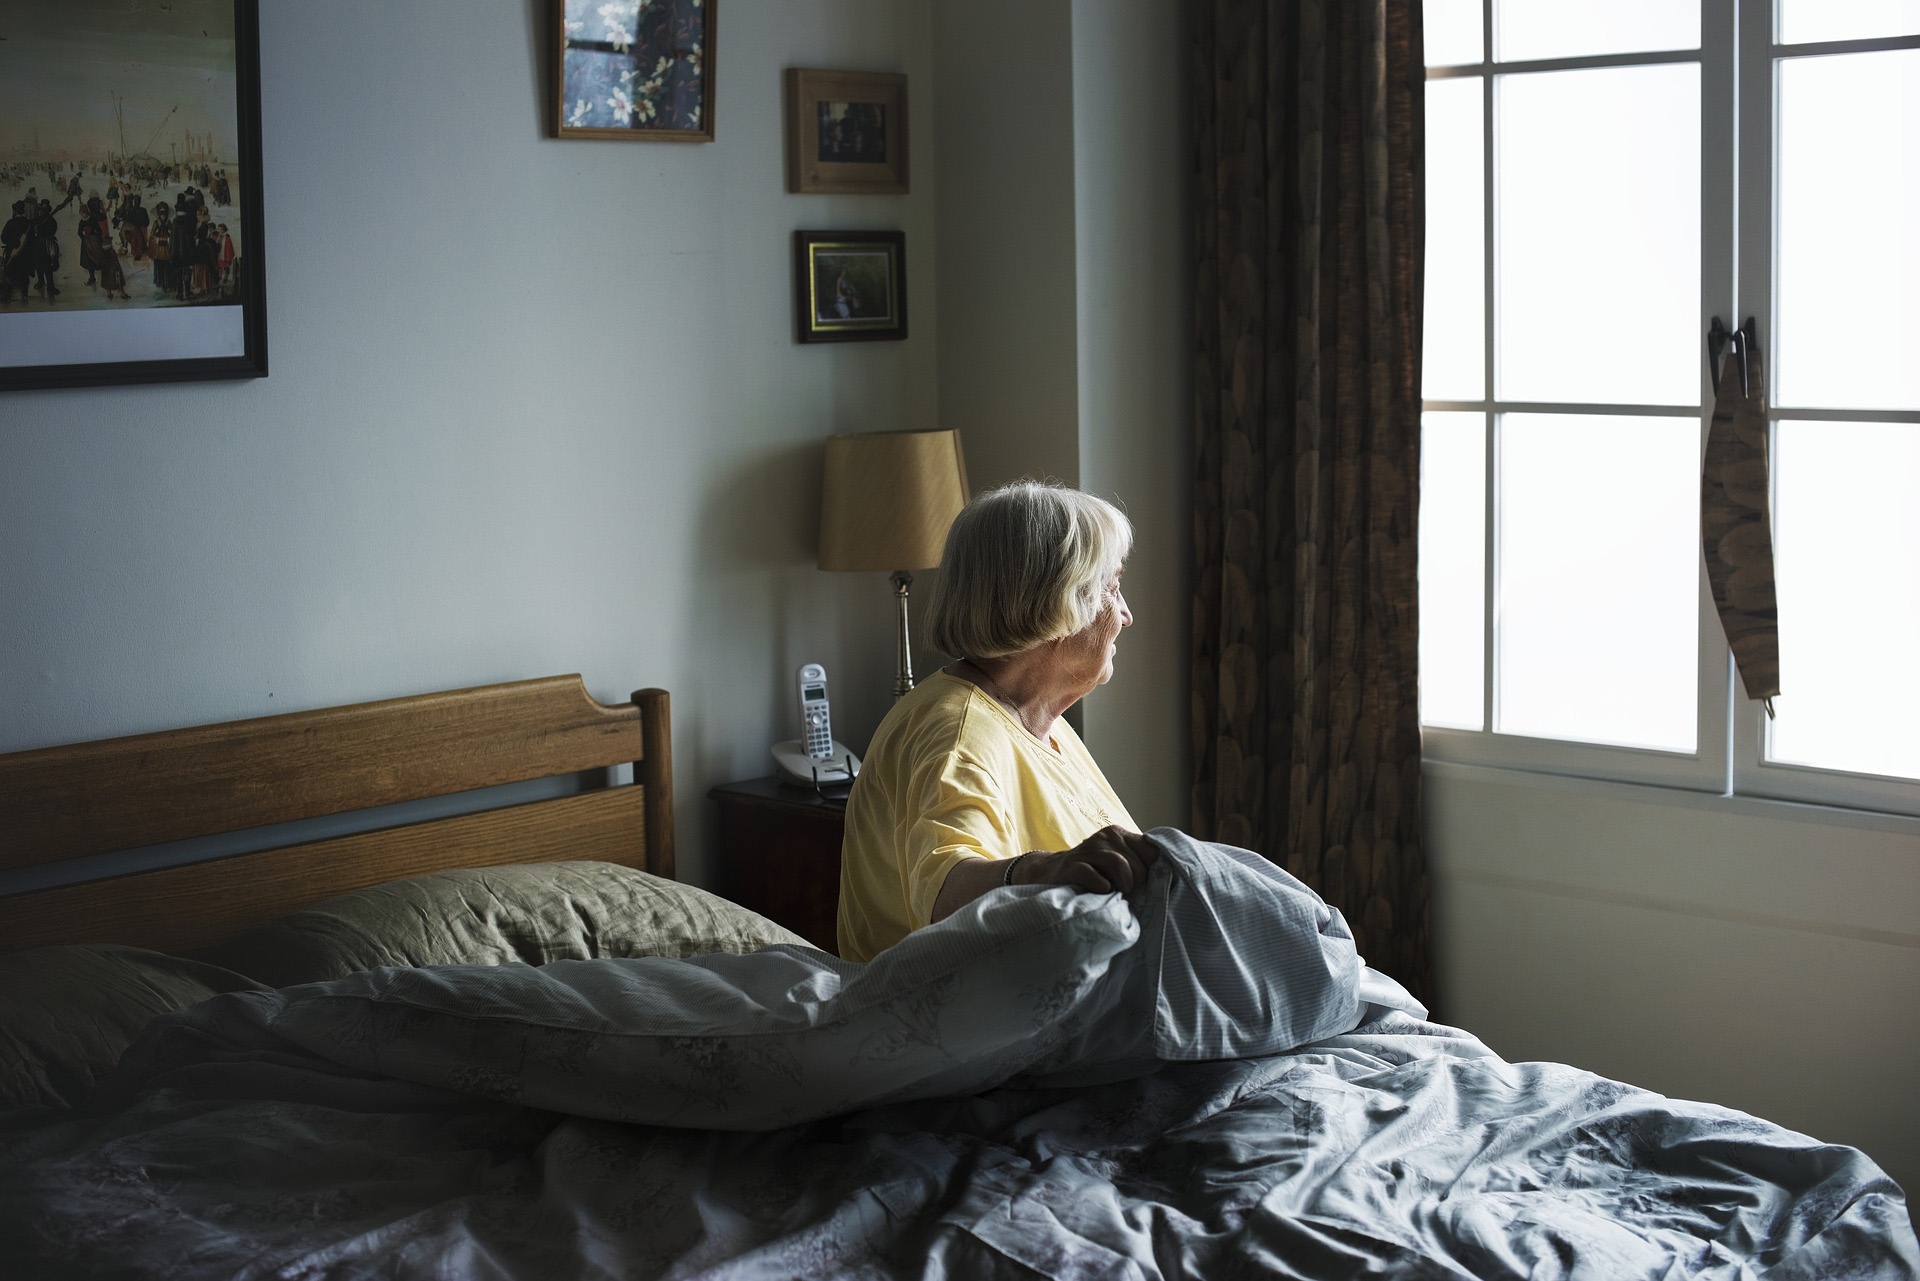 Afbeelding van Gedoe rond dementie en euthanasie zal tot meer zelfmoorden leiden